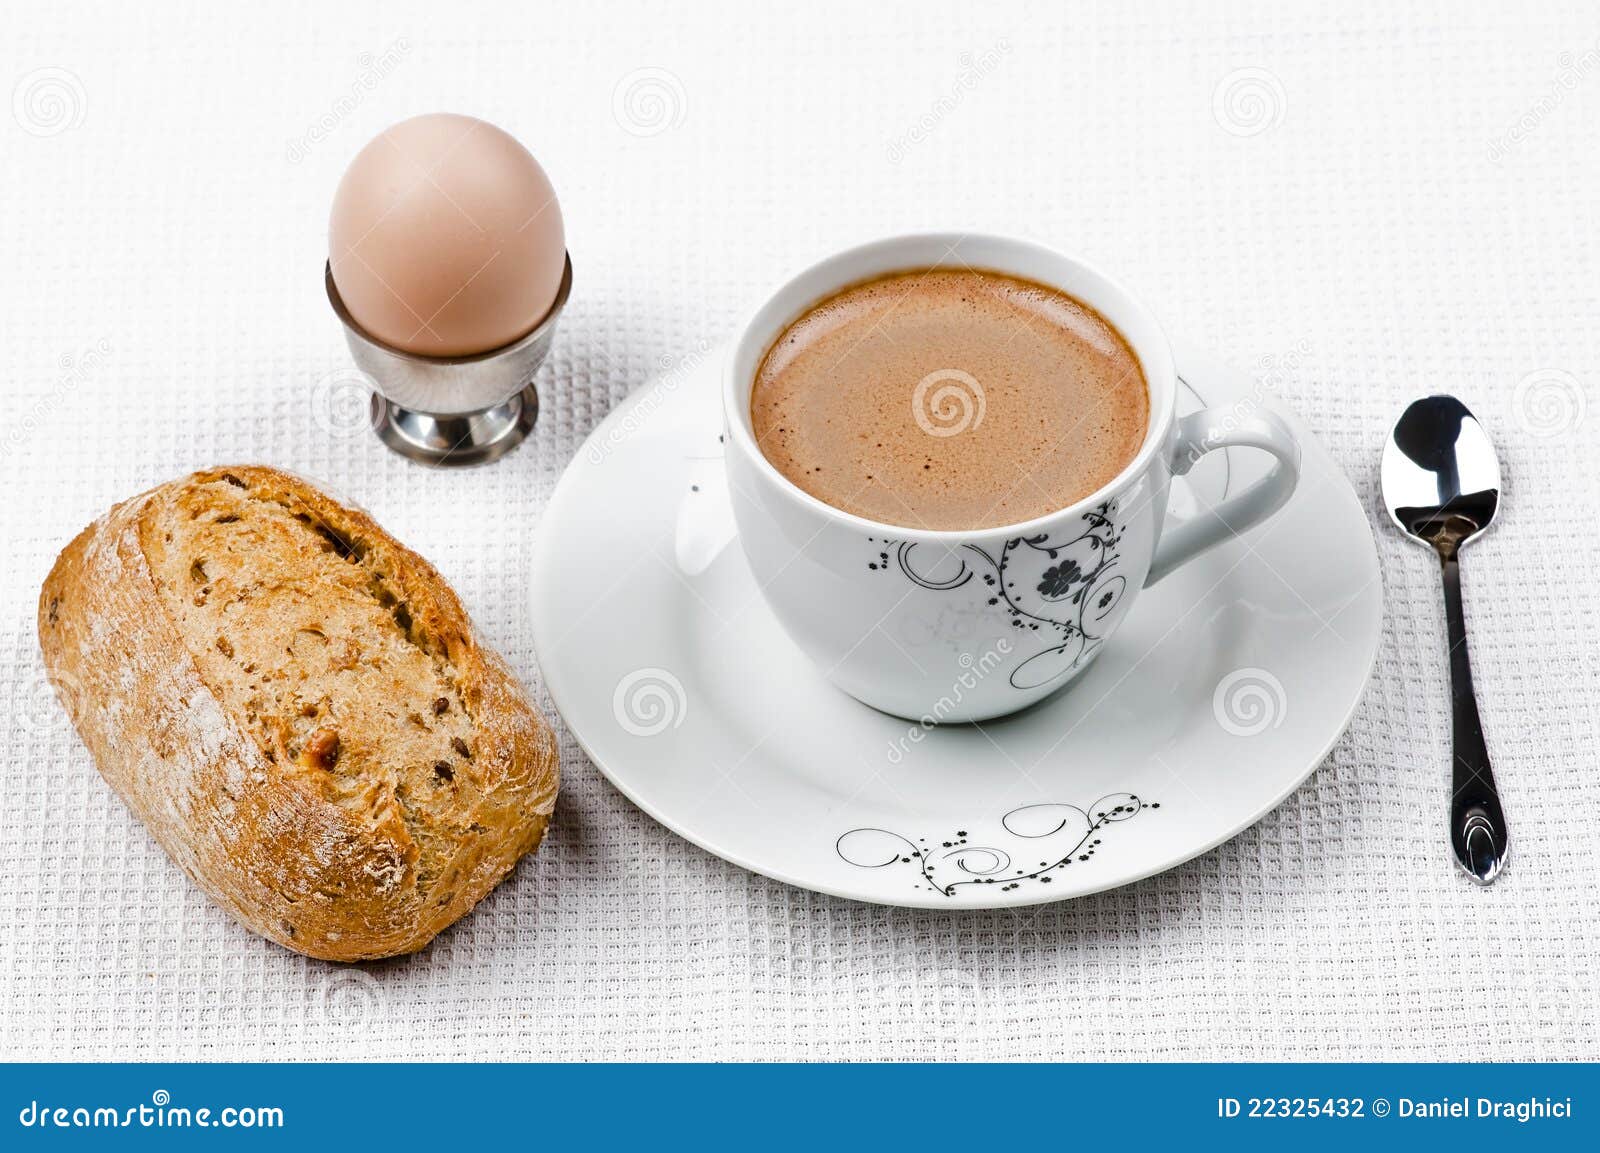 桌面上的一杯咖啡与牛角面包早餐图片 - 免费可商用图片 - cc0.cn